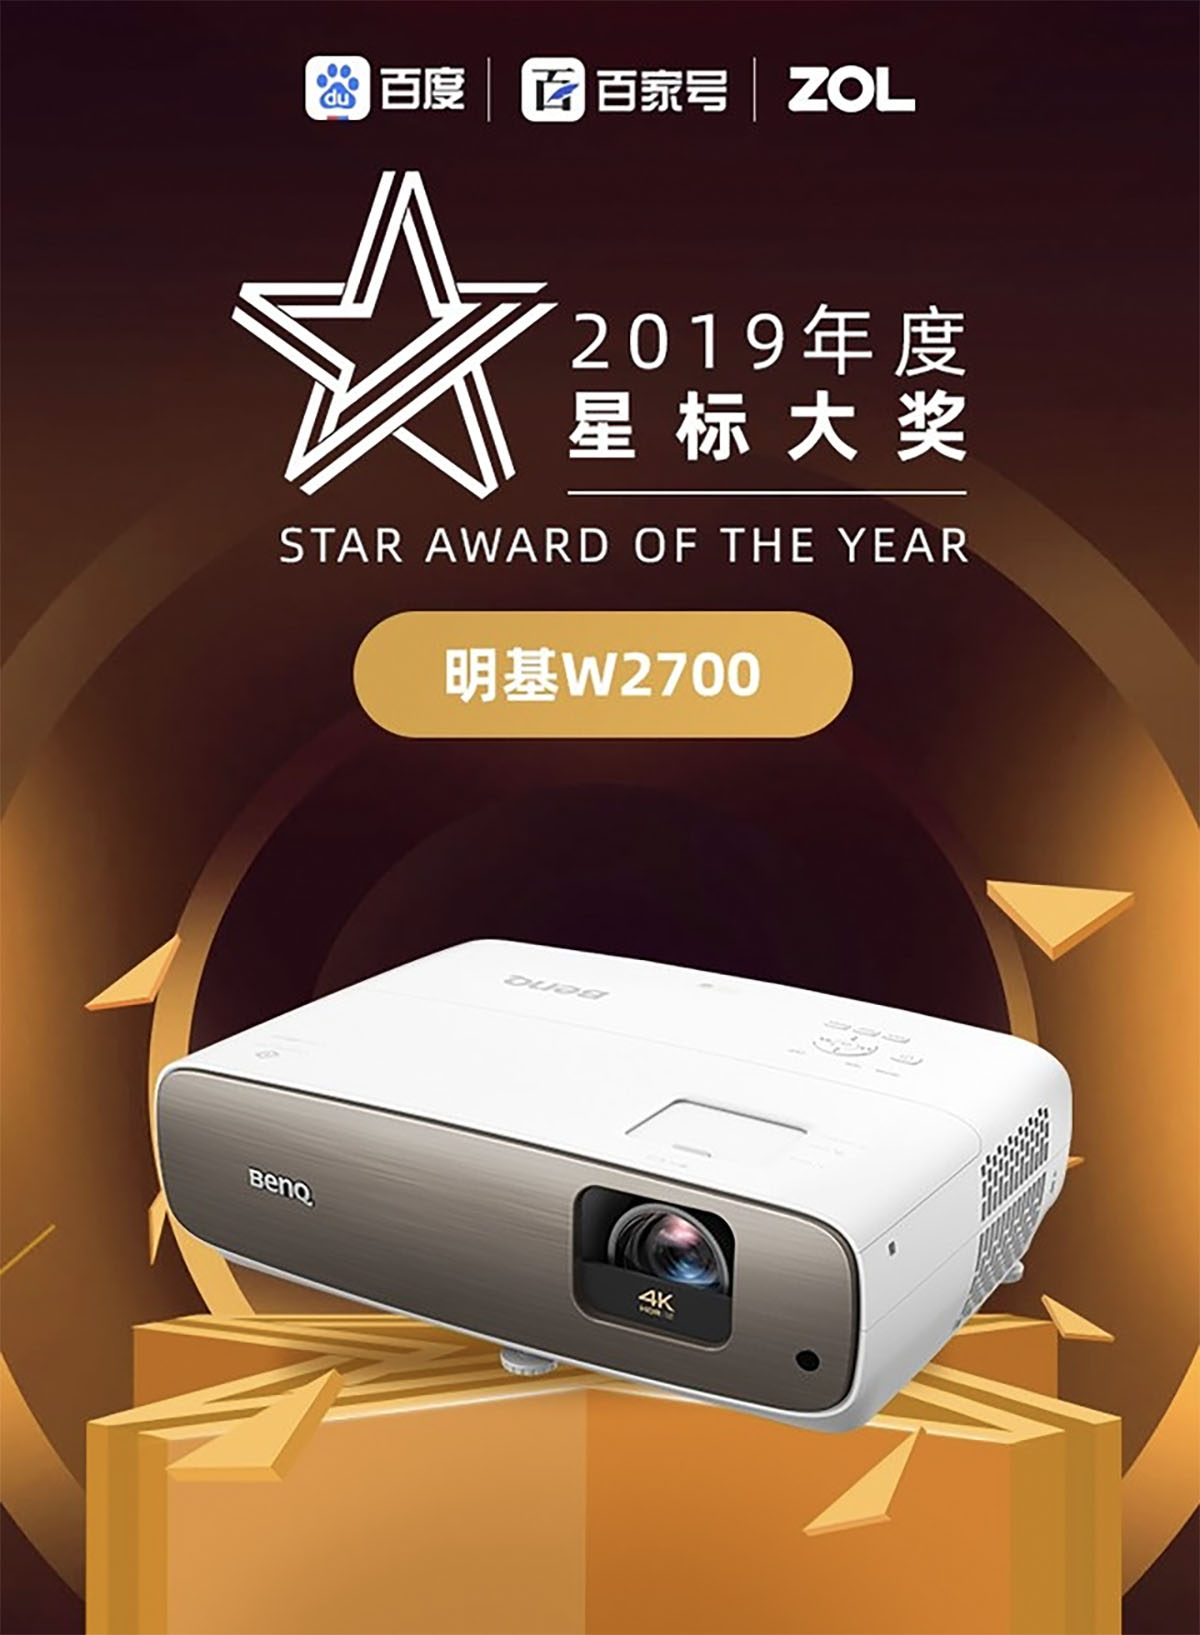 明基W2700投影机获得2019年度星标大奖